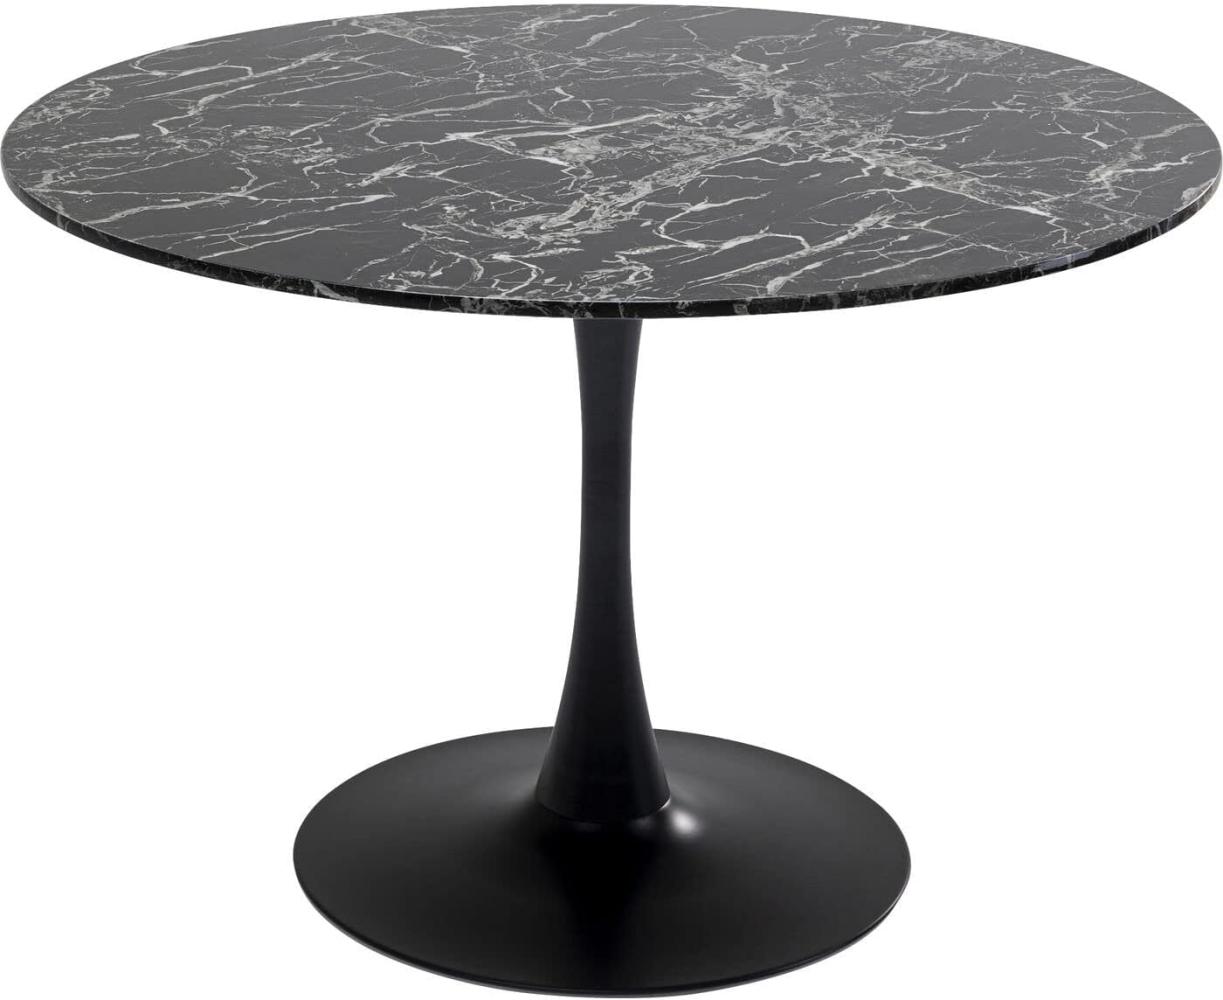 Kare Design Tisch Veneto Marmor, Schwarz, Ø110cm, Naturstein Mineralmarmor, Tischfuß Stahl, Esstisch für 4-6 Personen Bild 1